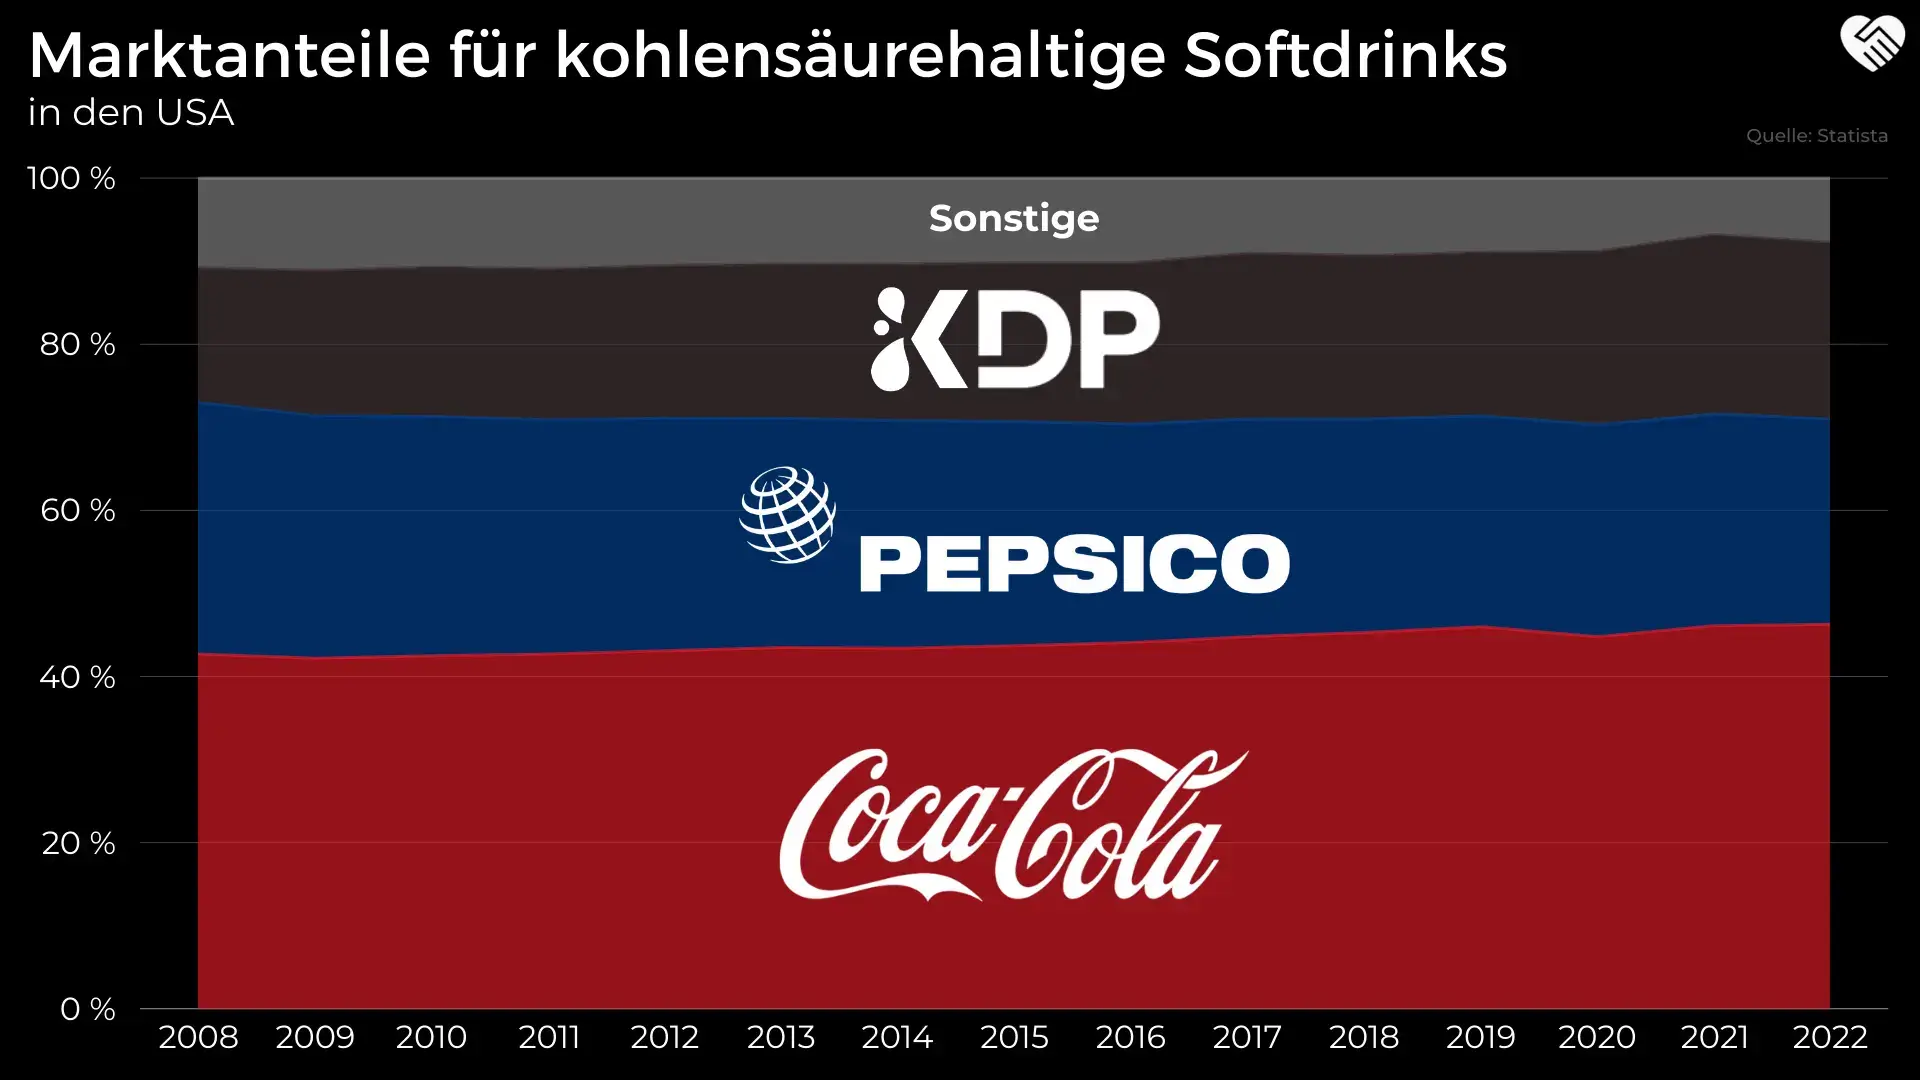 Pepsi Aktie Analyse - Die bessere Coca-Cola Alternative?